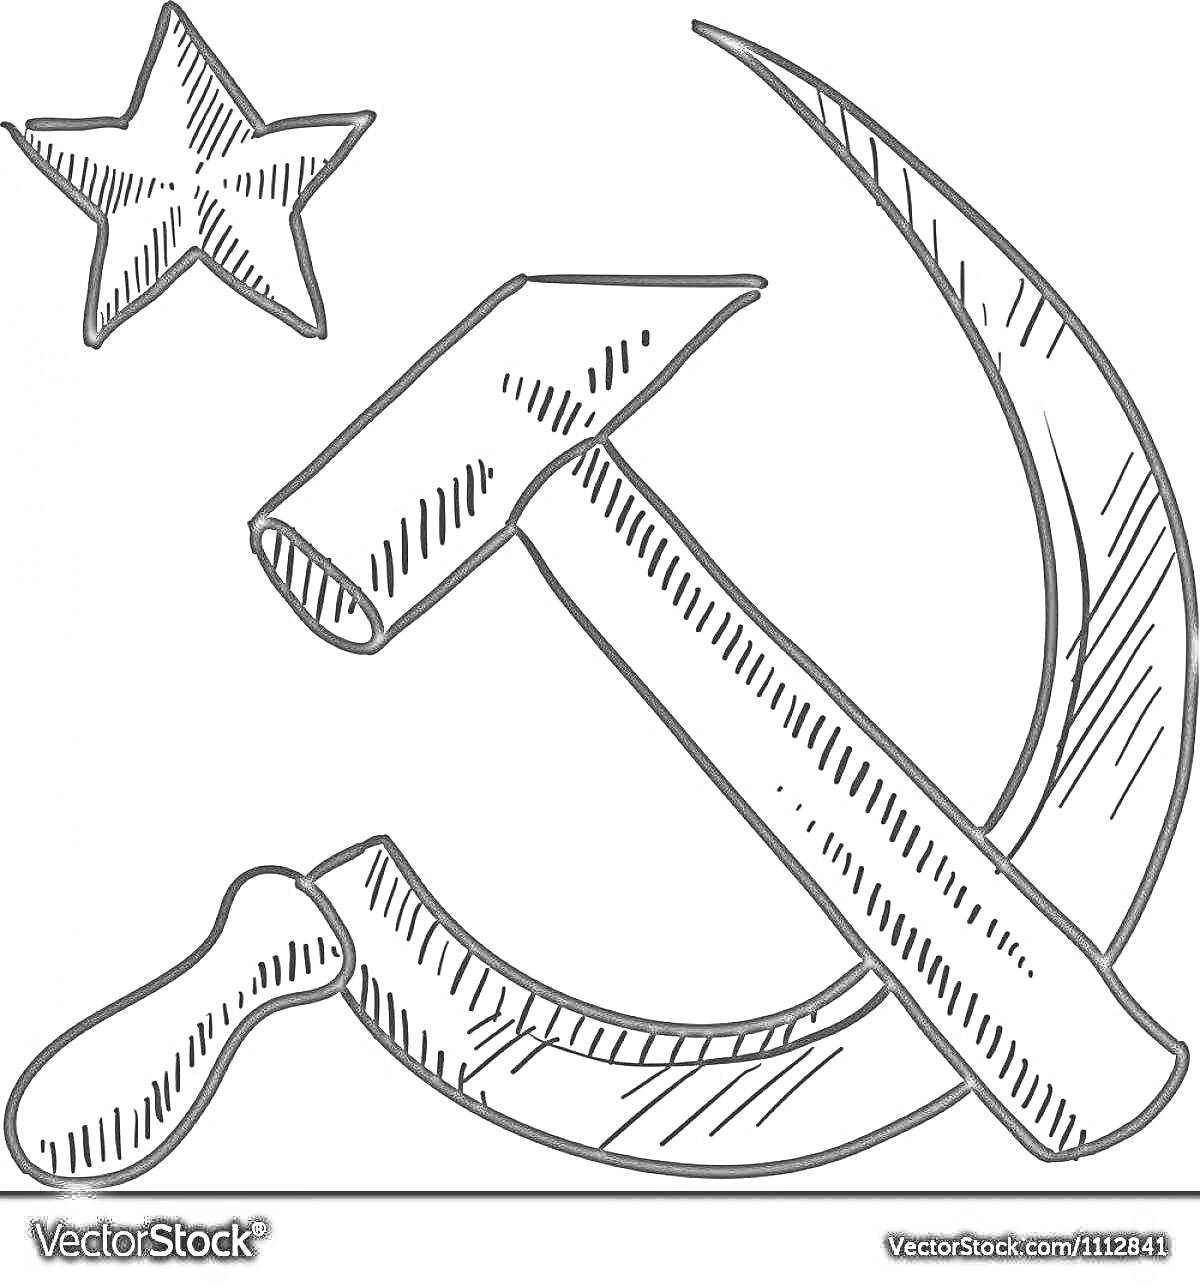 Пятиконечная звезда и серп с молотом на флаге СССР